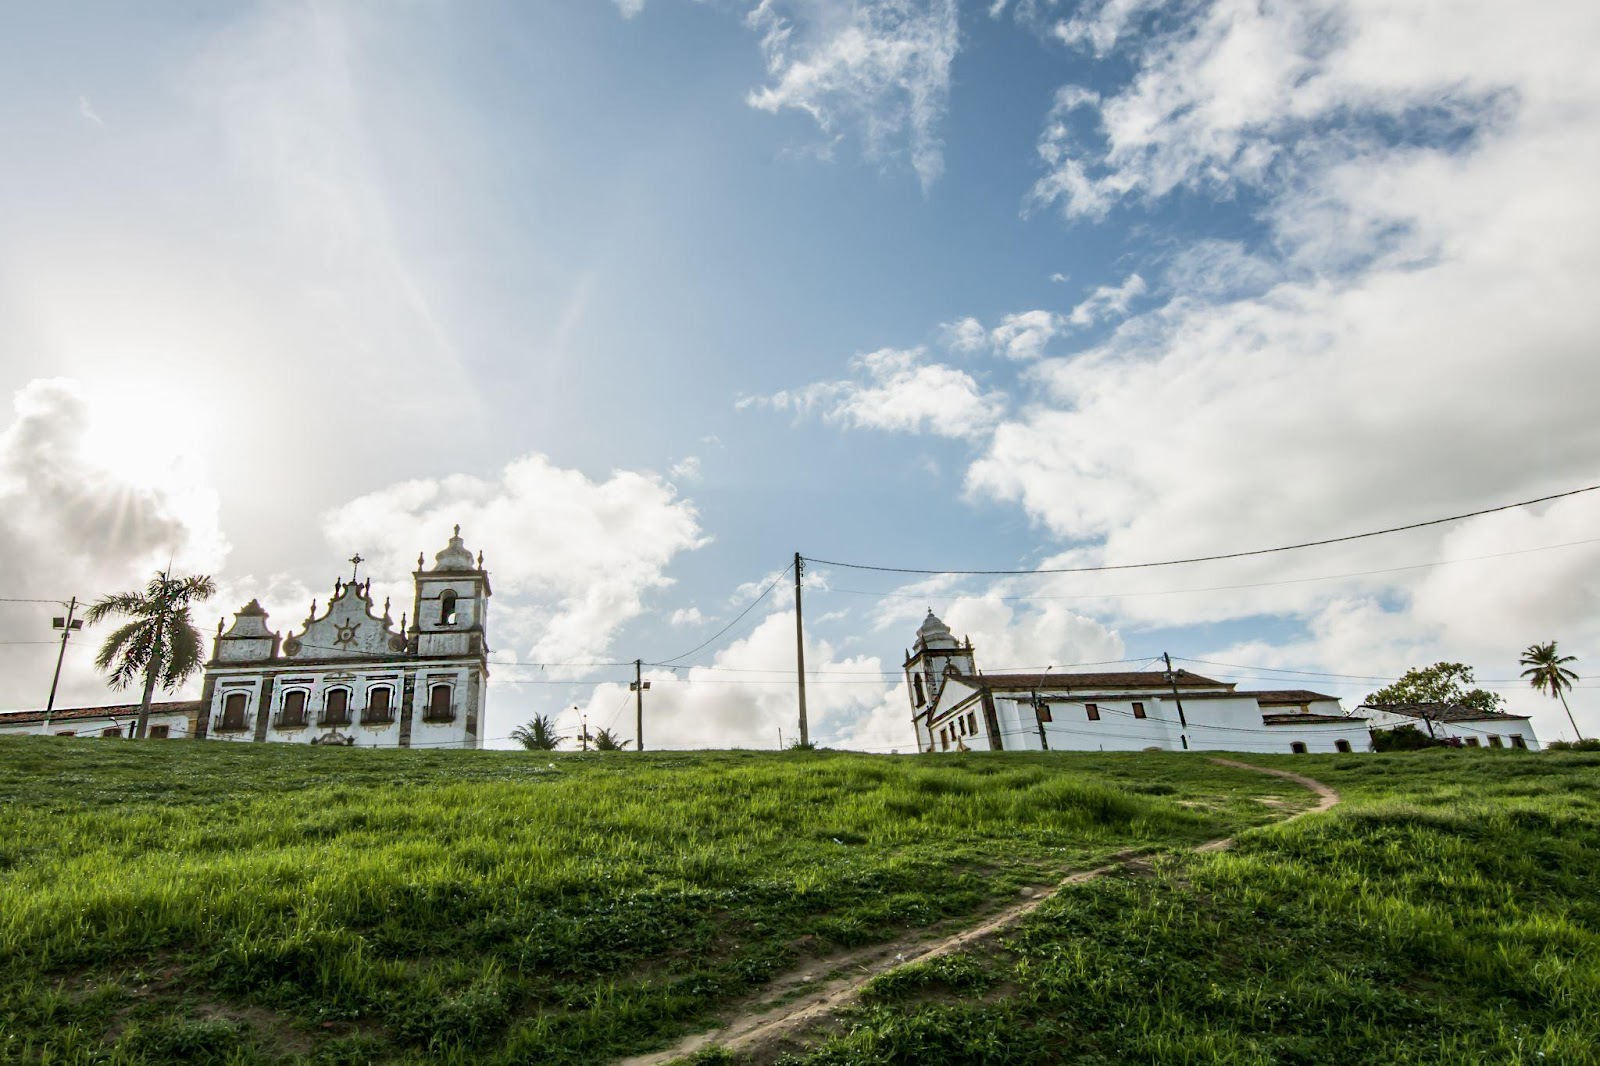 Morro de gramado com a Igreja de São Cosme e Damião no topo. Céu azul com grandes nuvens acinzentadas